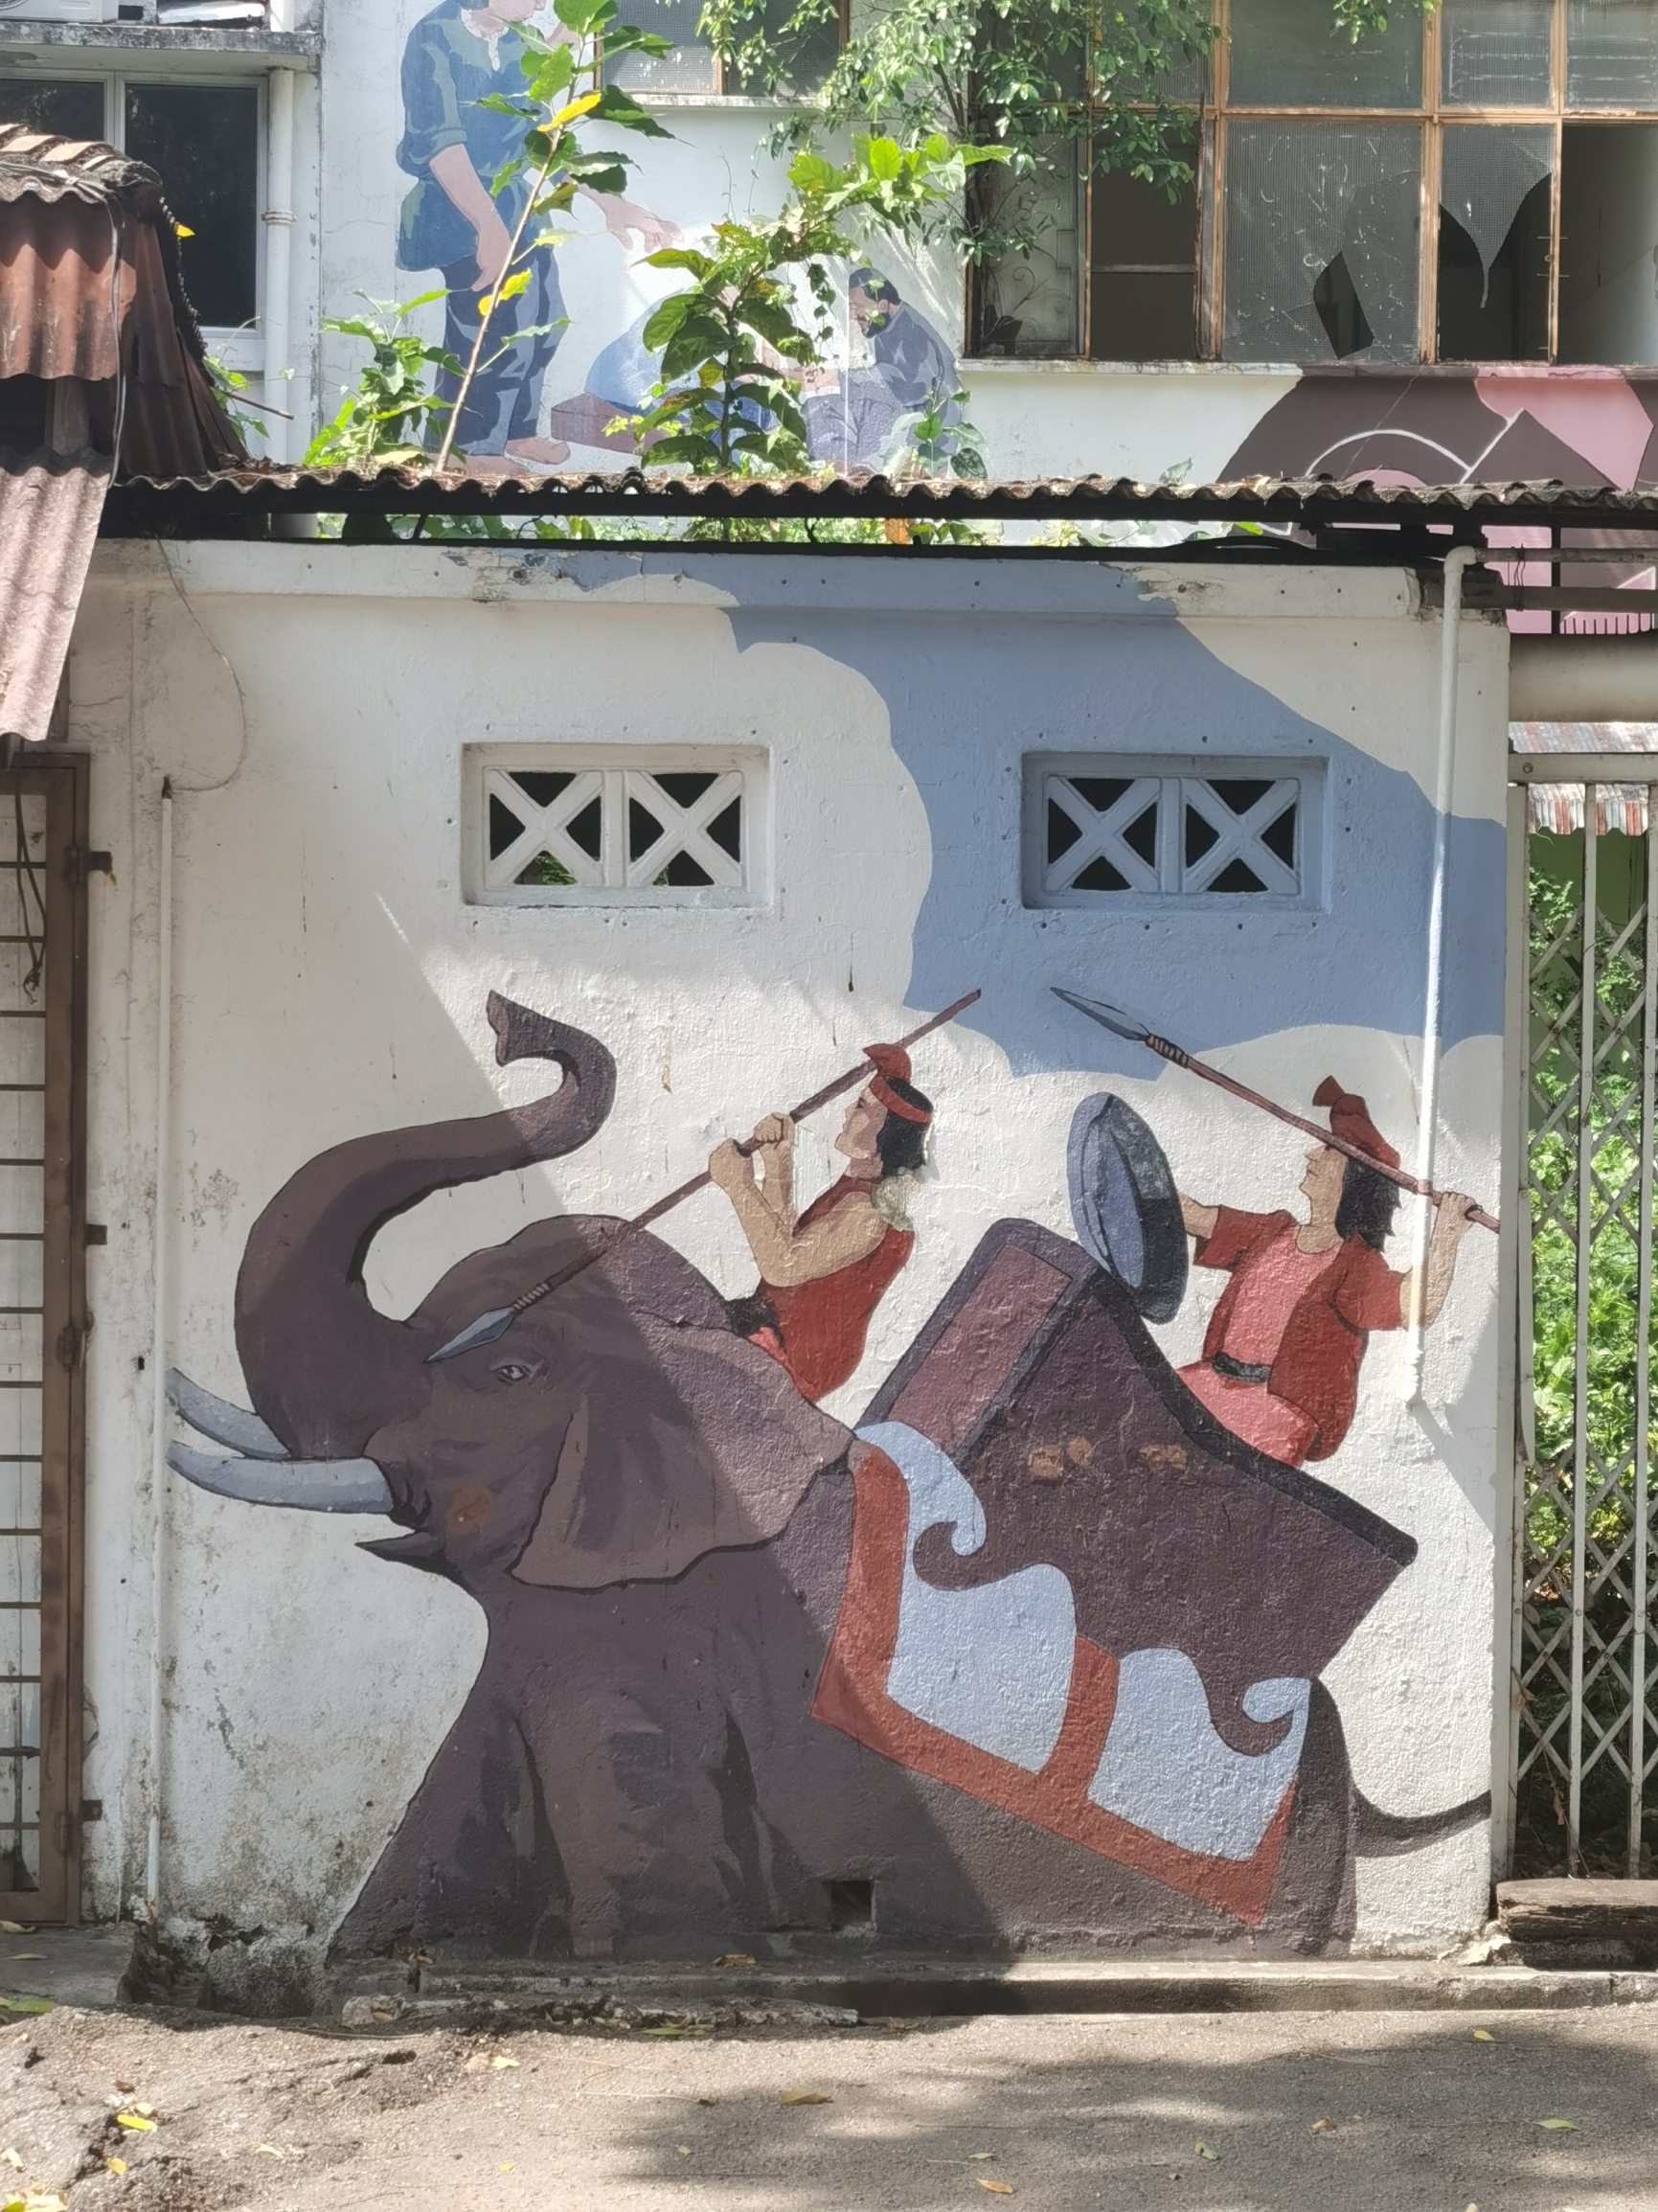 马来西亚很多城市都有壁画，马六甲也不例外。 在马六甲待了三天，转了不少地方，对马六甲的壁画做个笔记，